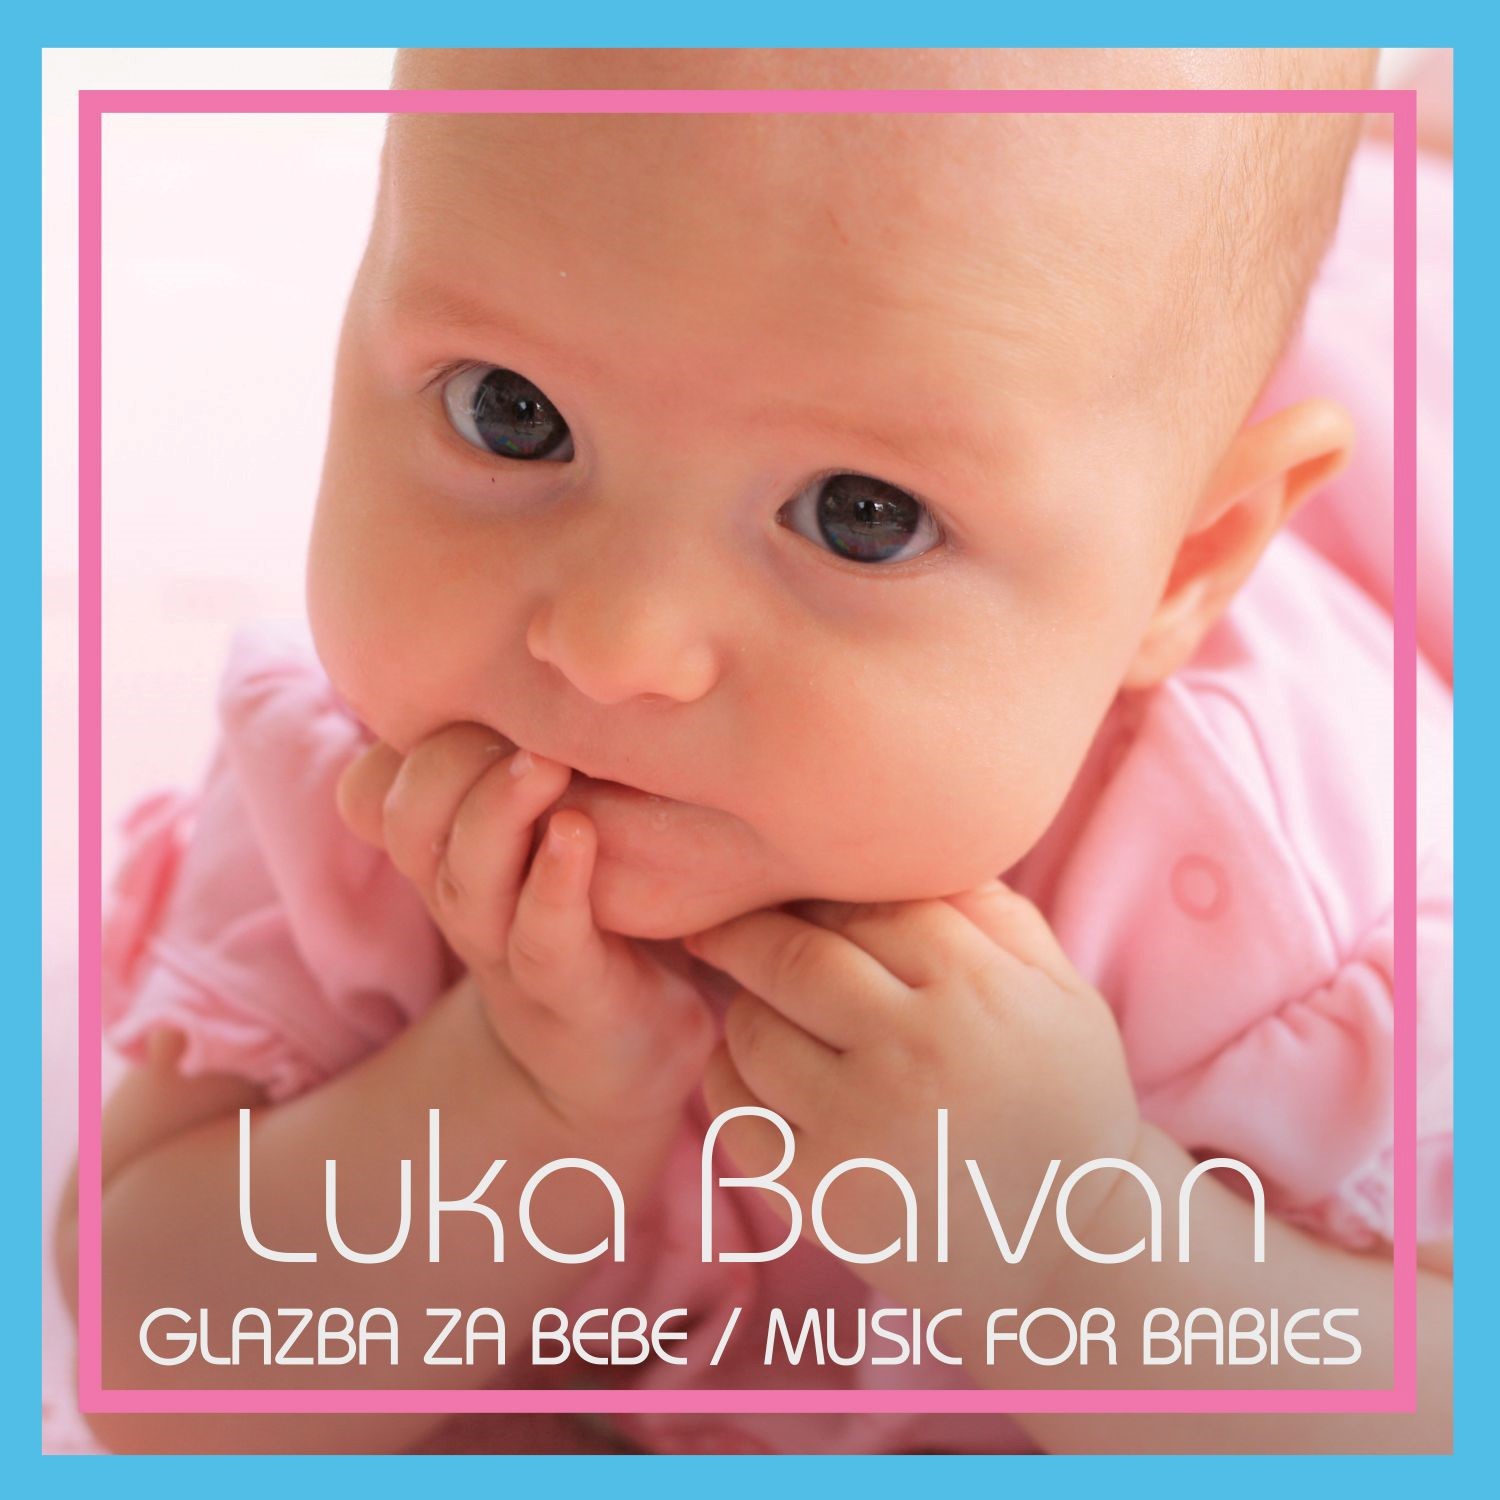 Od danas je u prodaji album “Glazba za bebe / Music for babies”